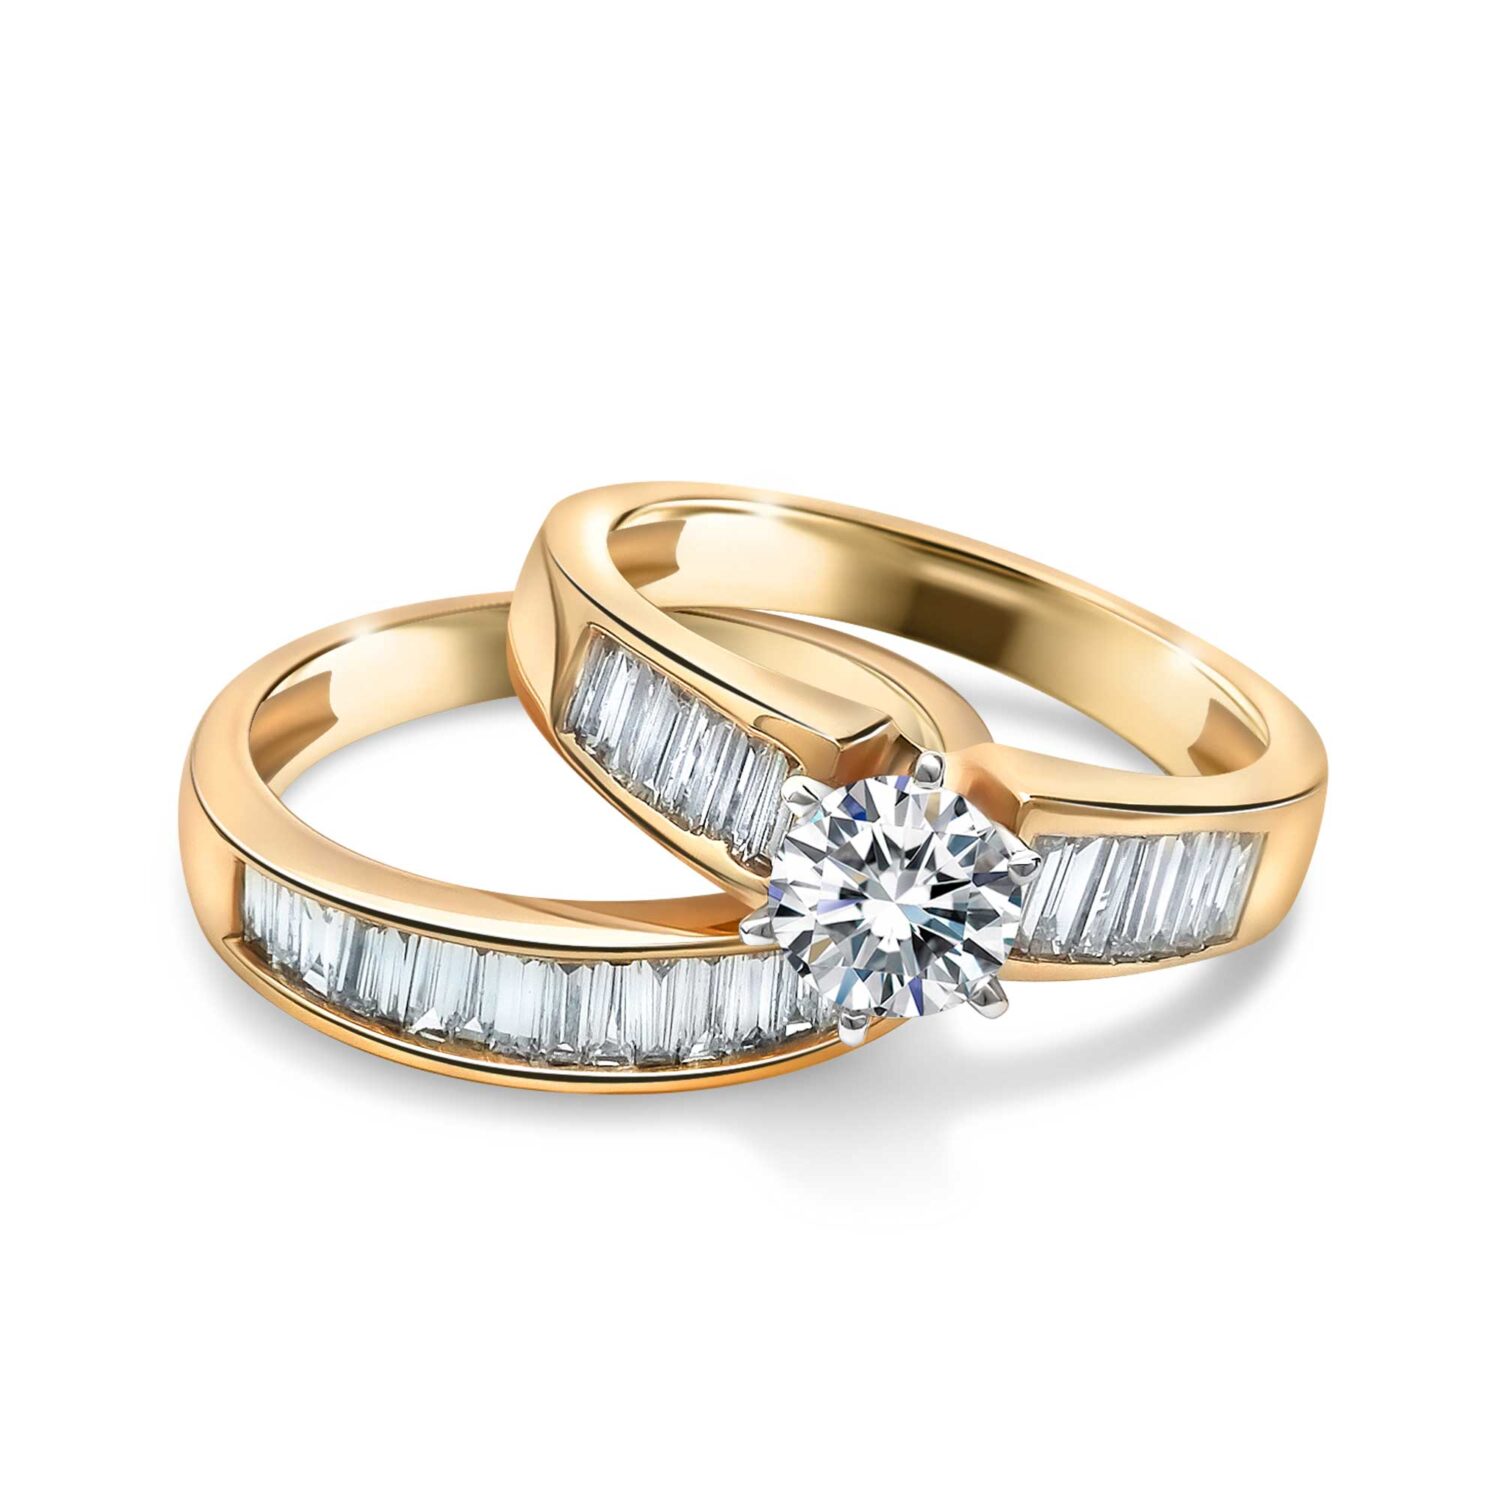  Bridal  Set Engagement Ring  And Wedding  Band  Richards Jewelry